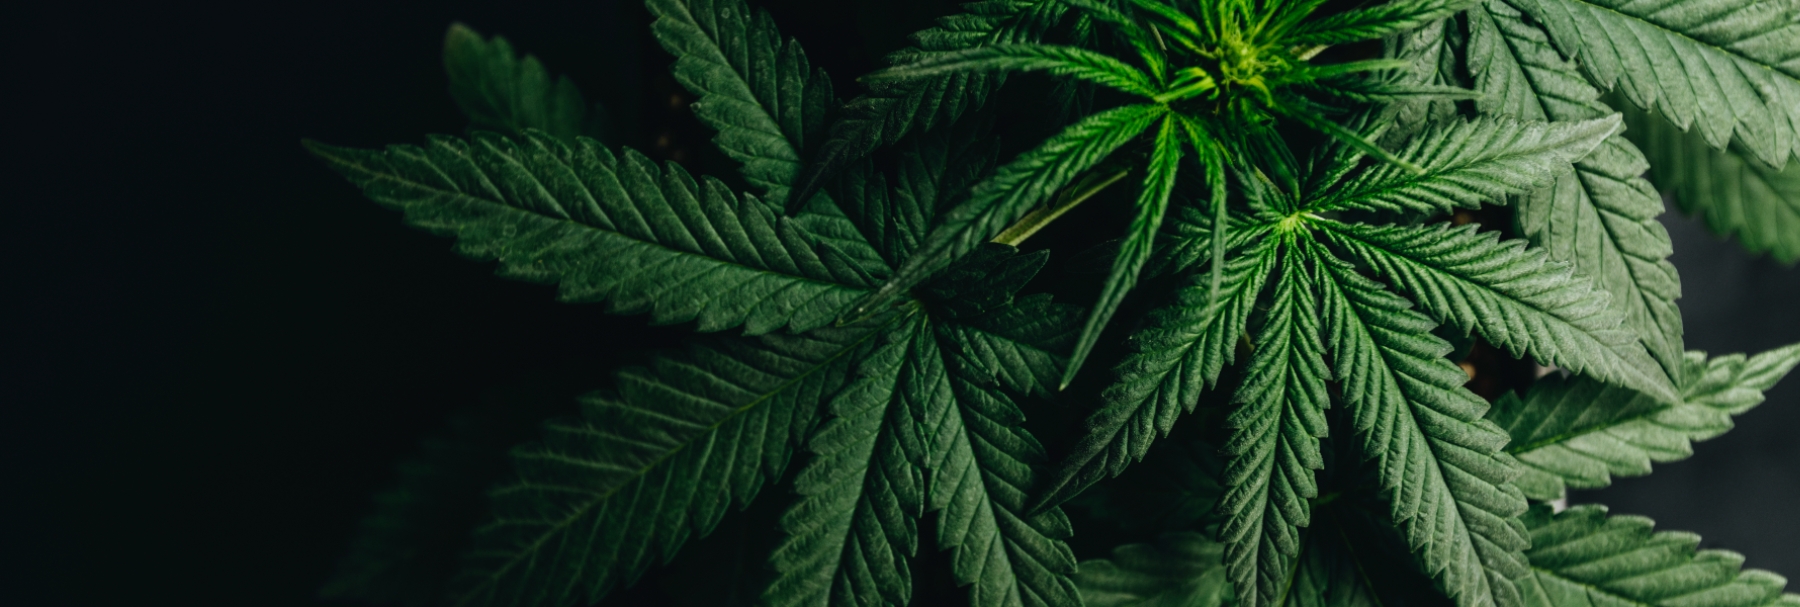 EY - Cannabis plants